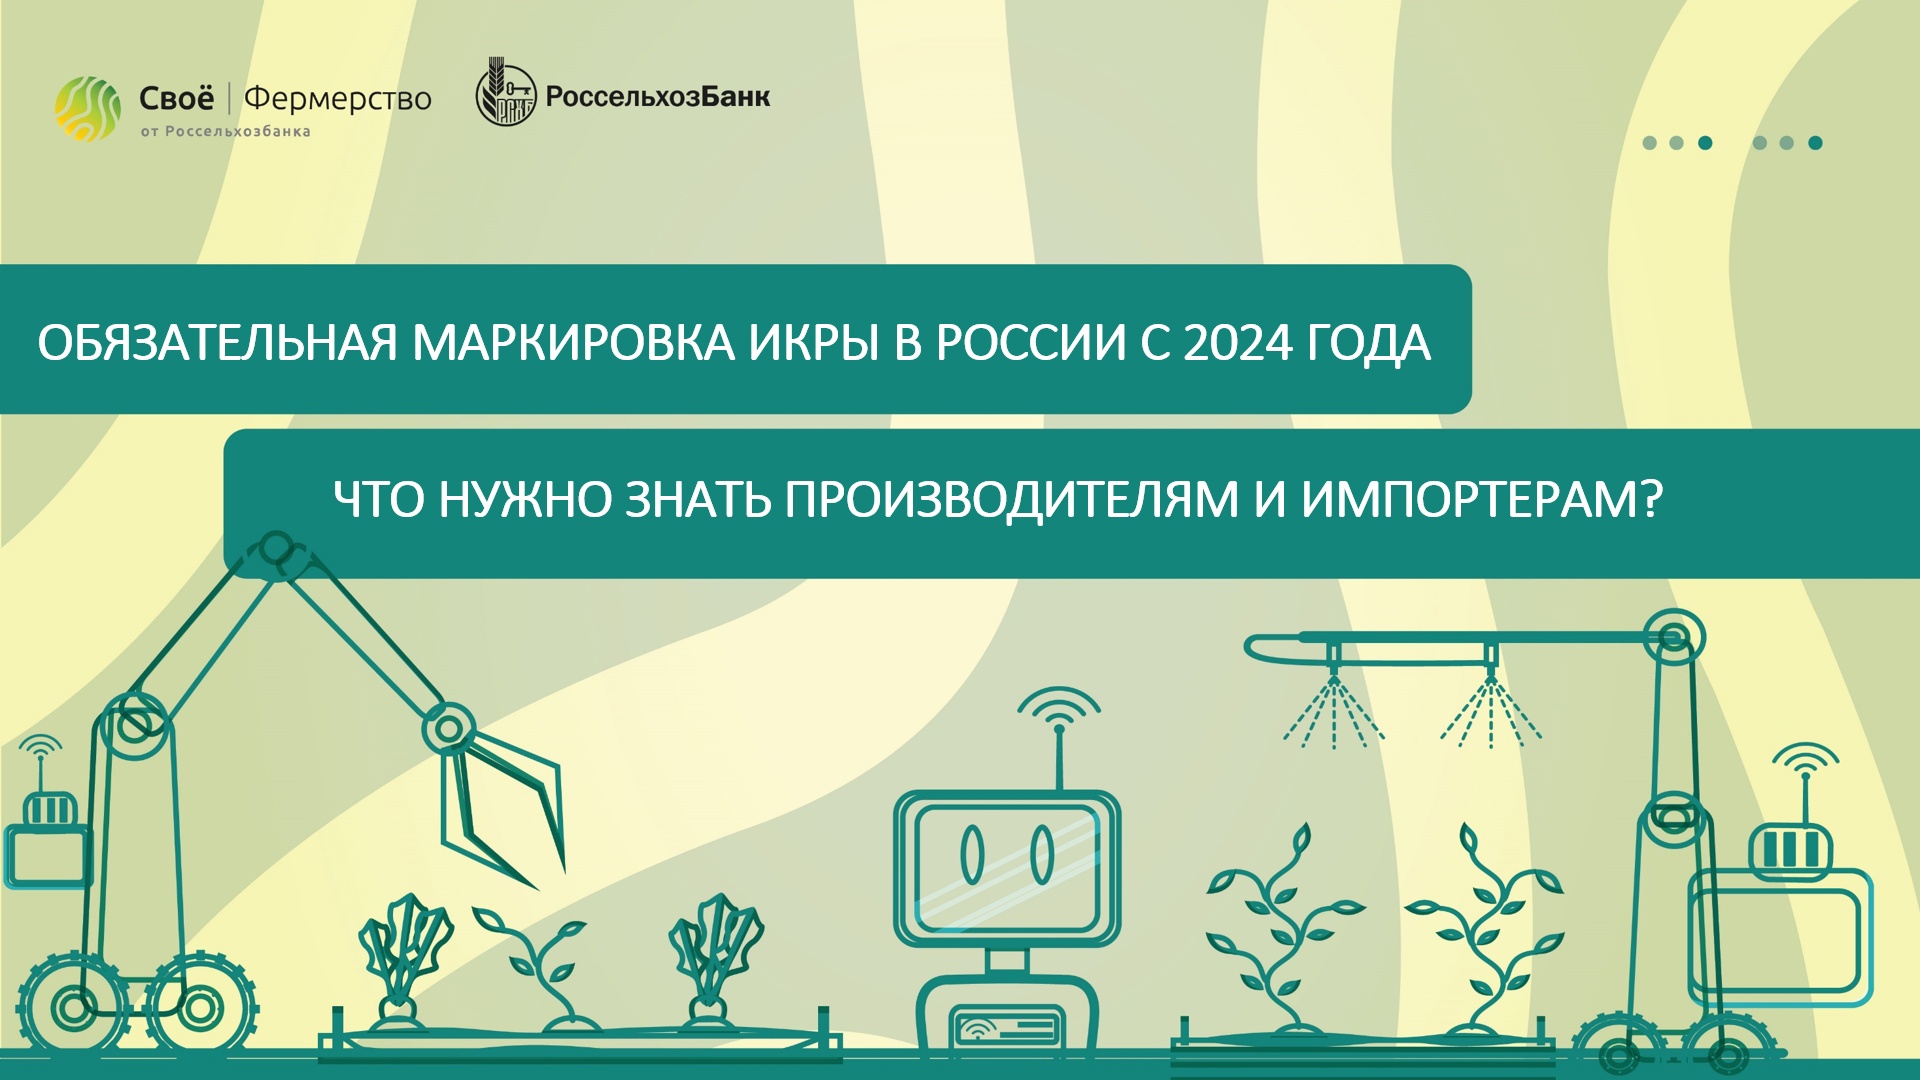 Обязательная маркировка икры в России с 2024 года. Что нужно знать производителям и импортерам?